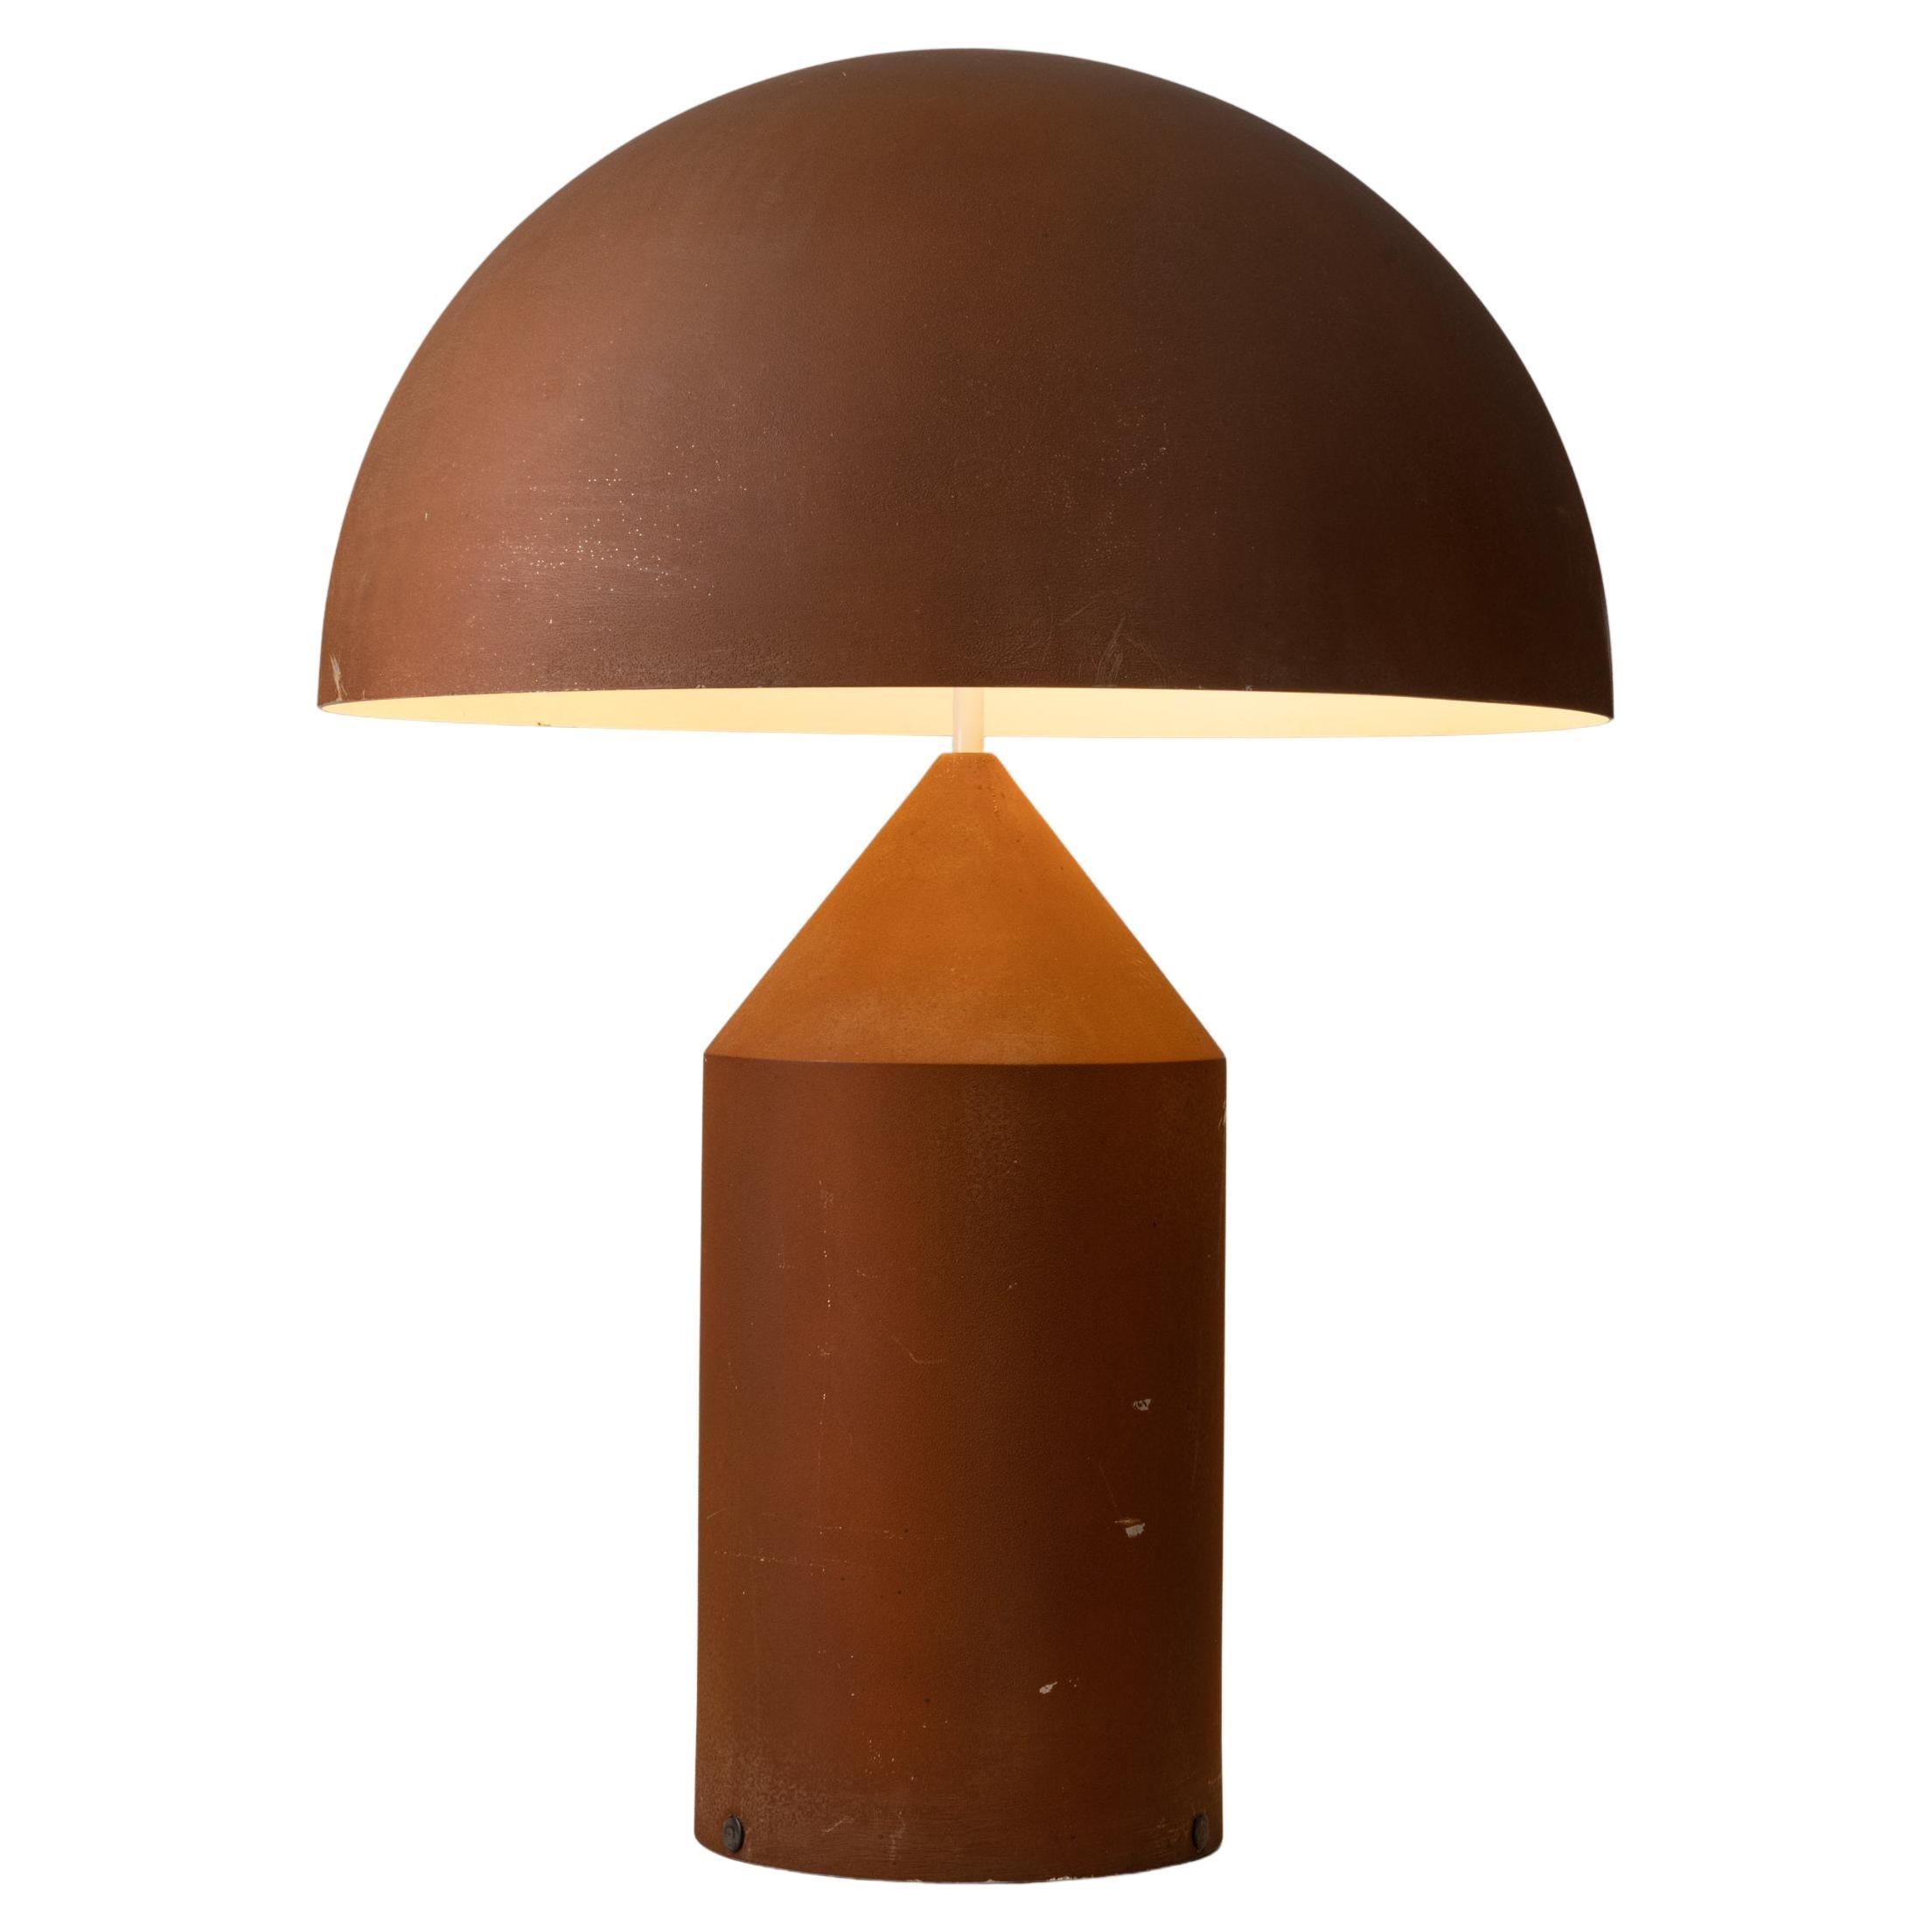 Rare Atollo Table Lamp by Vico Magistretti for Oluce